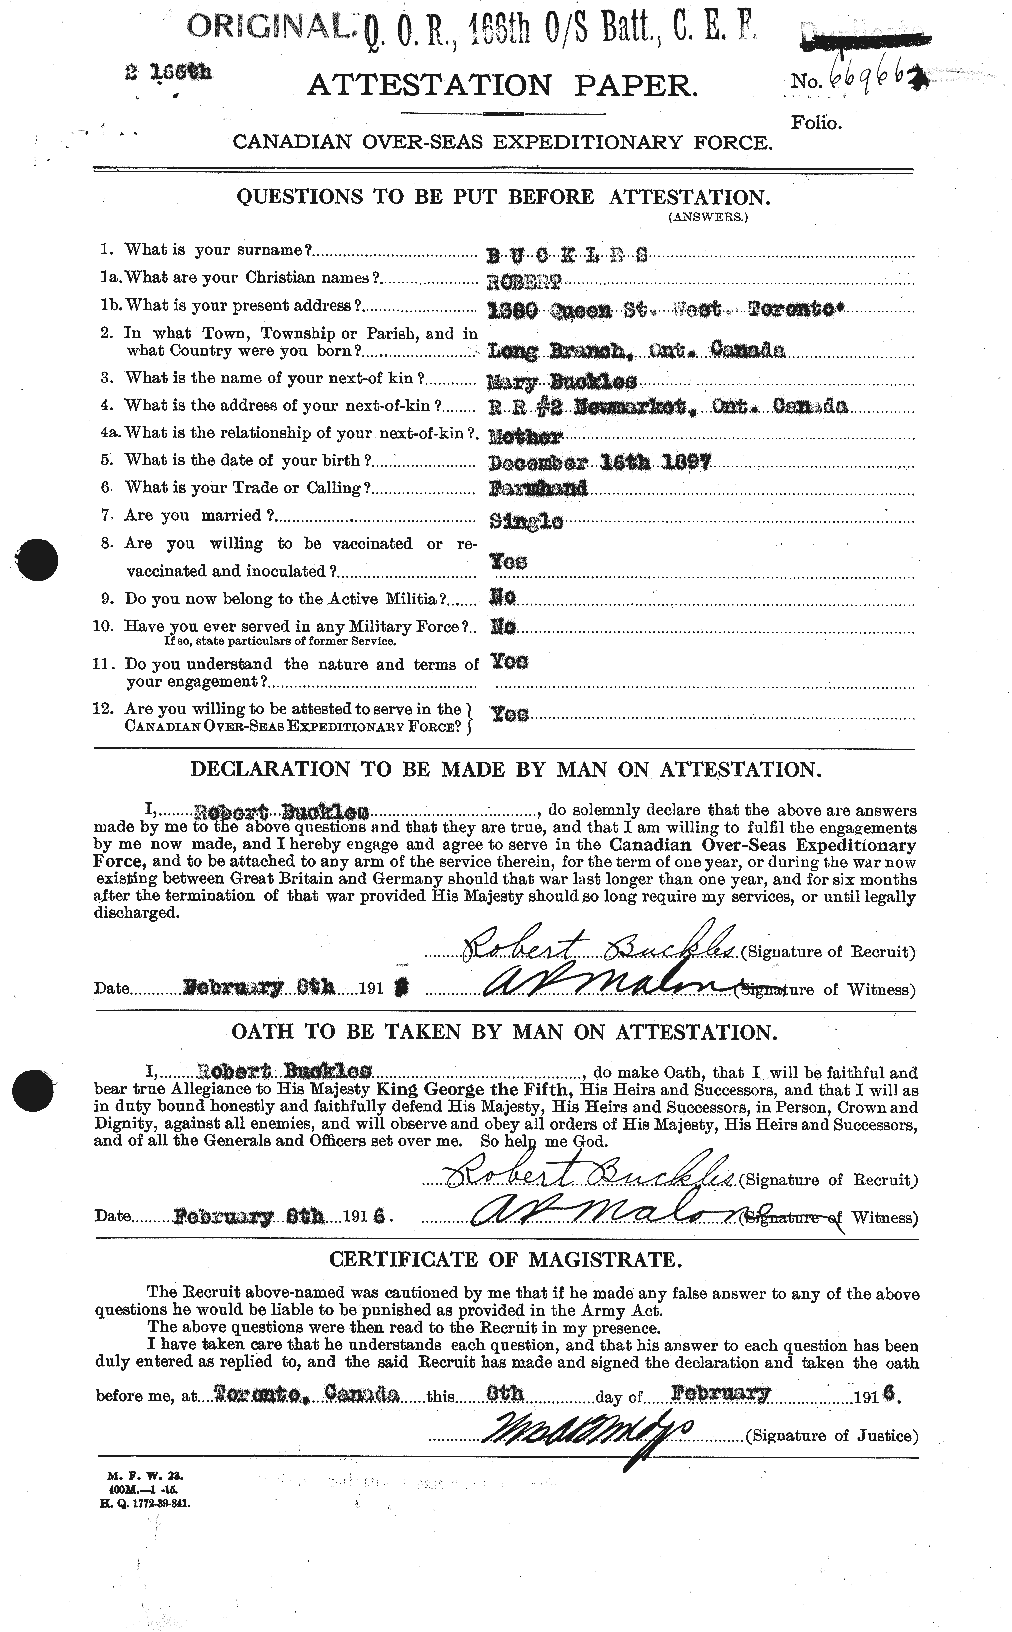 Dossiers du Personnel de la Première Guerre mondiale - CEC 270185a